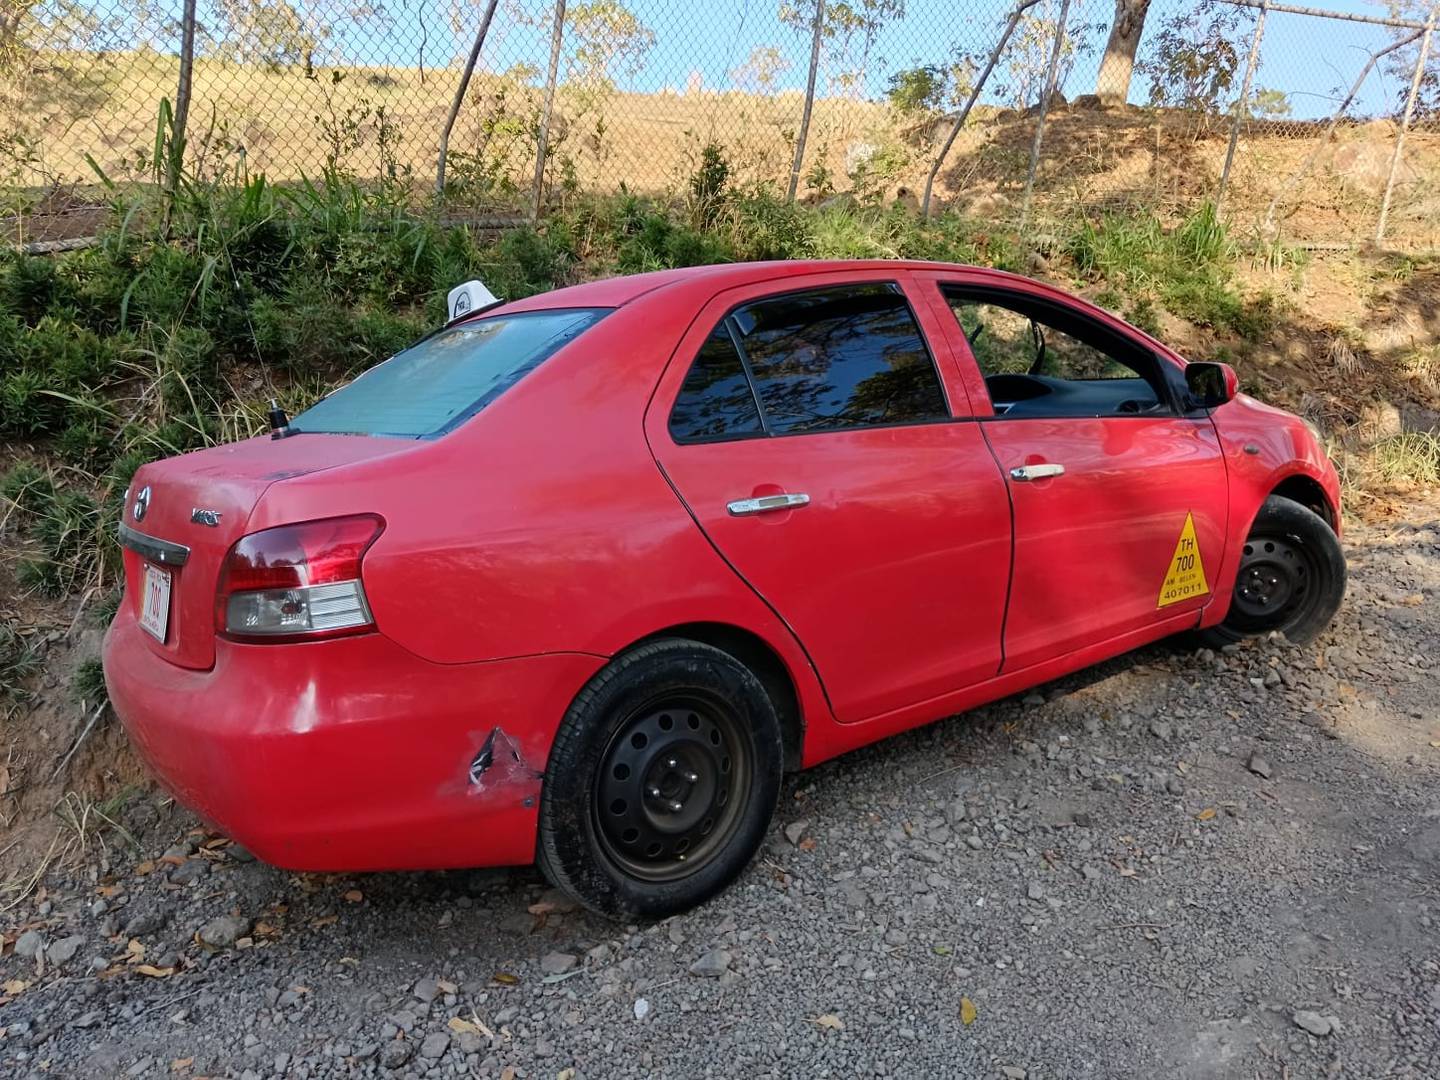 El taxi fue encontrado en una solitaria calle de lastre en San Rafael de Alajuela. Foto cortesía.